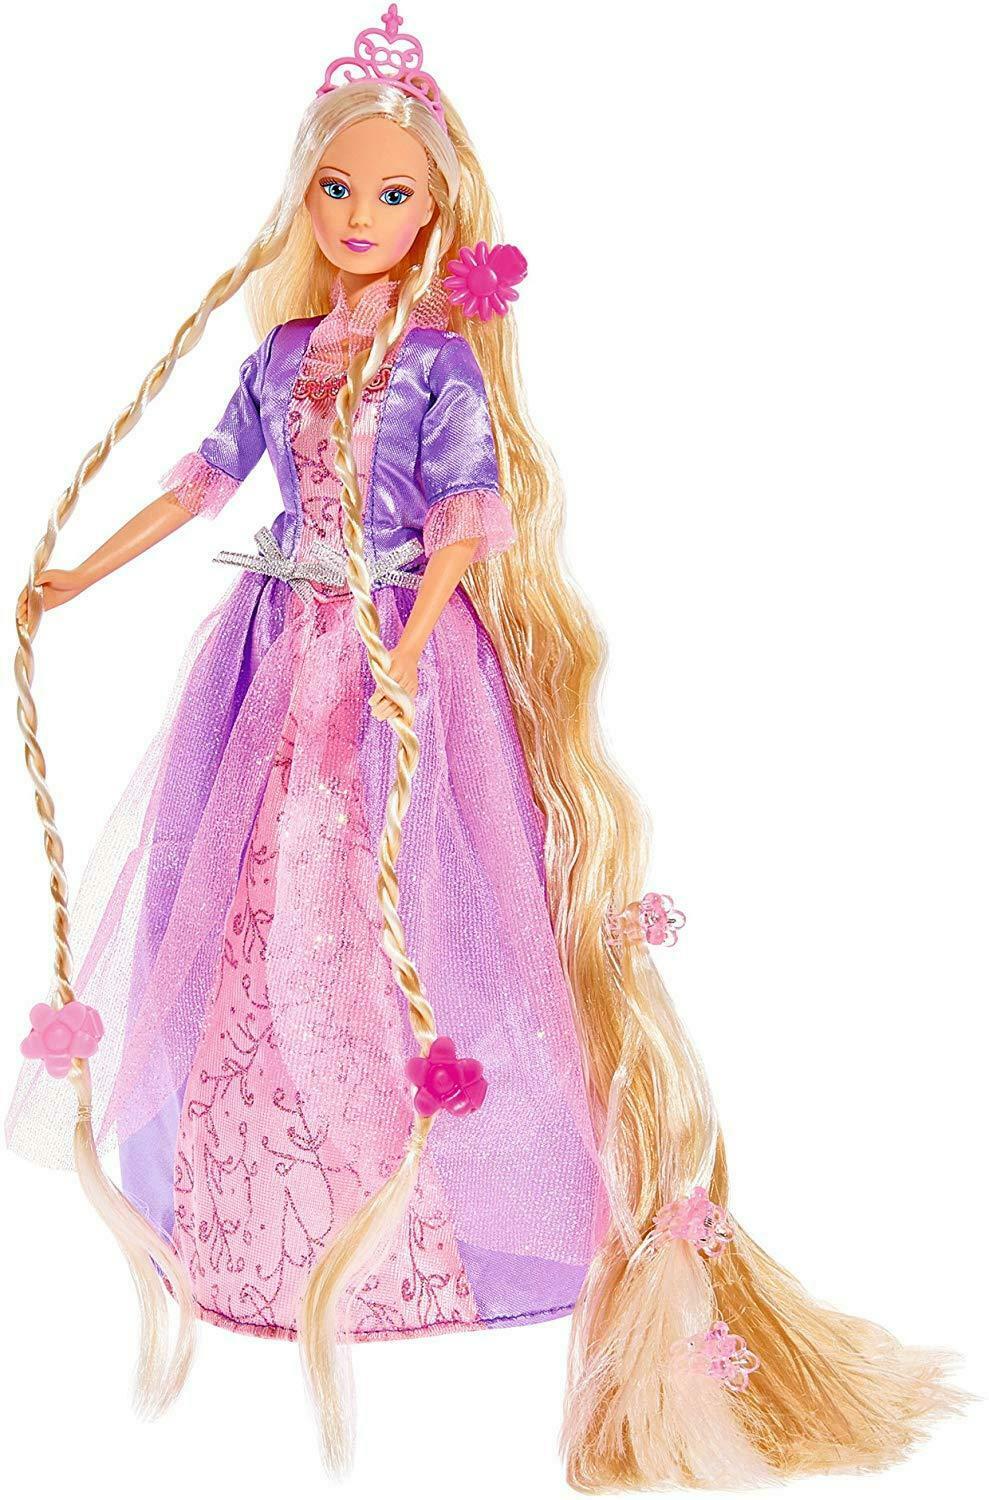 Steffi Love Princess Rapunzel